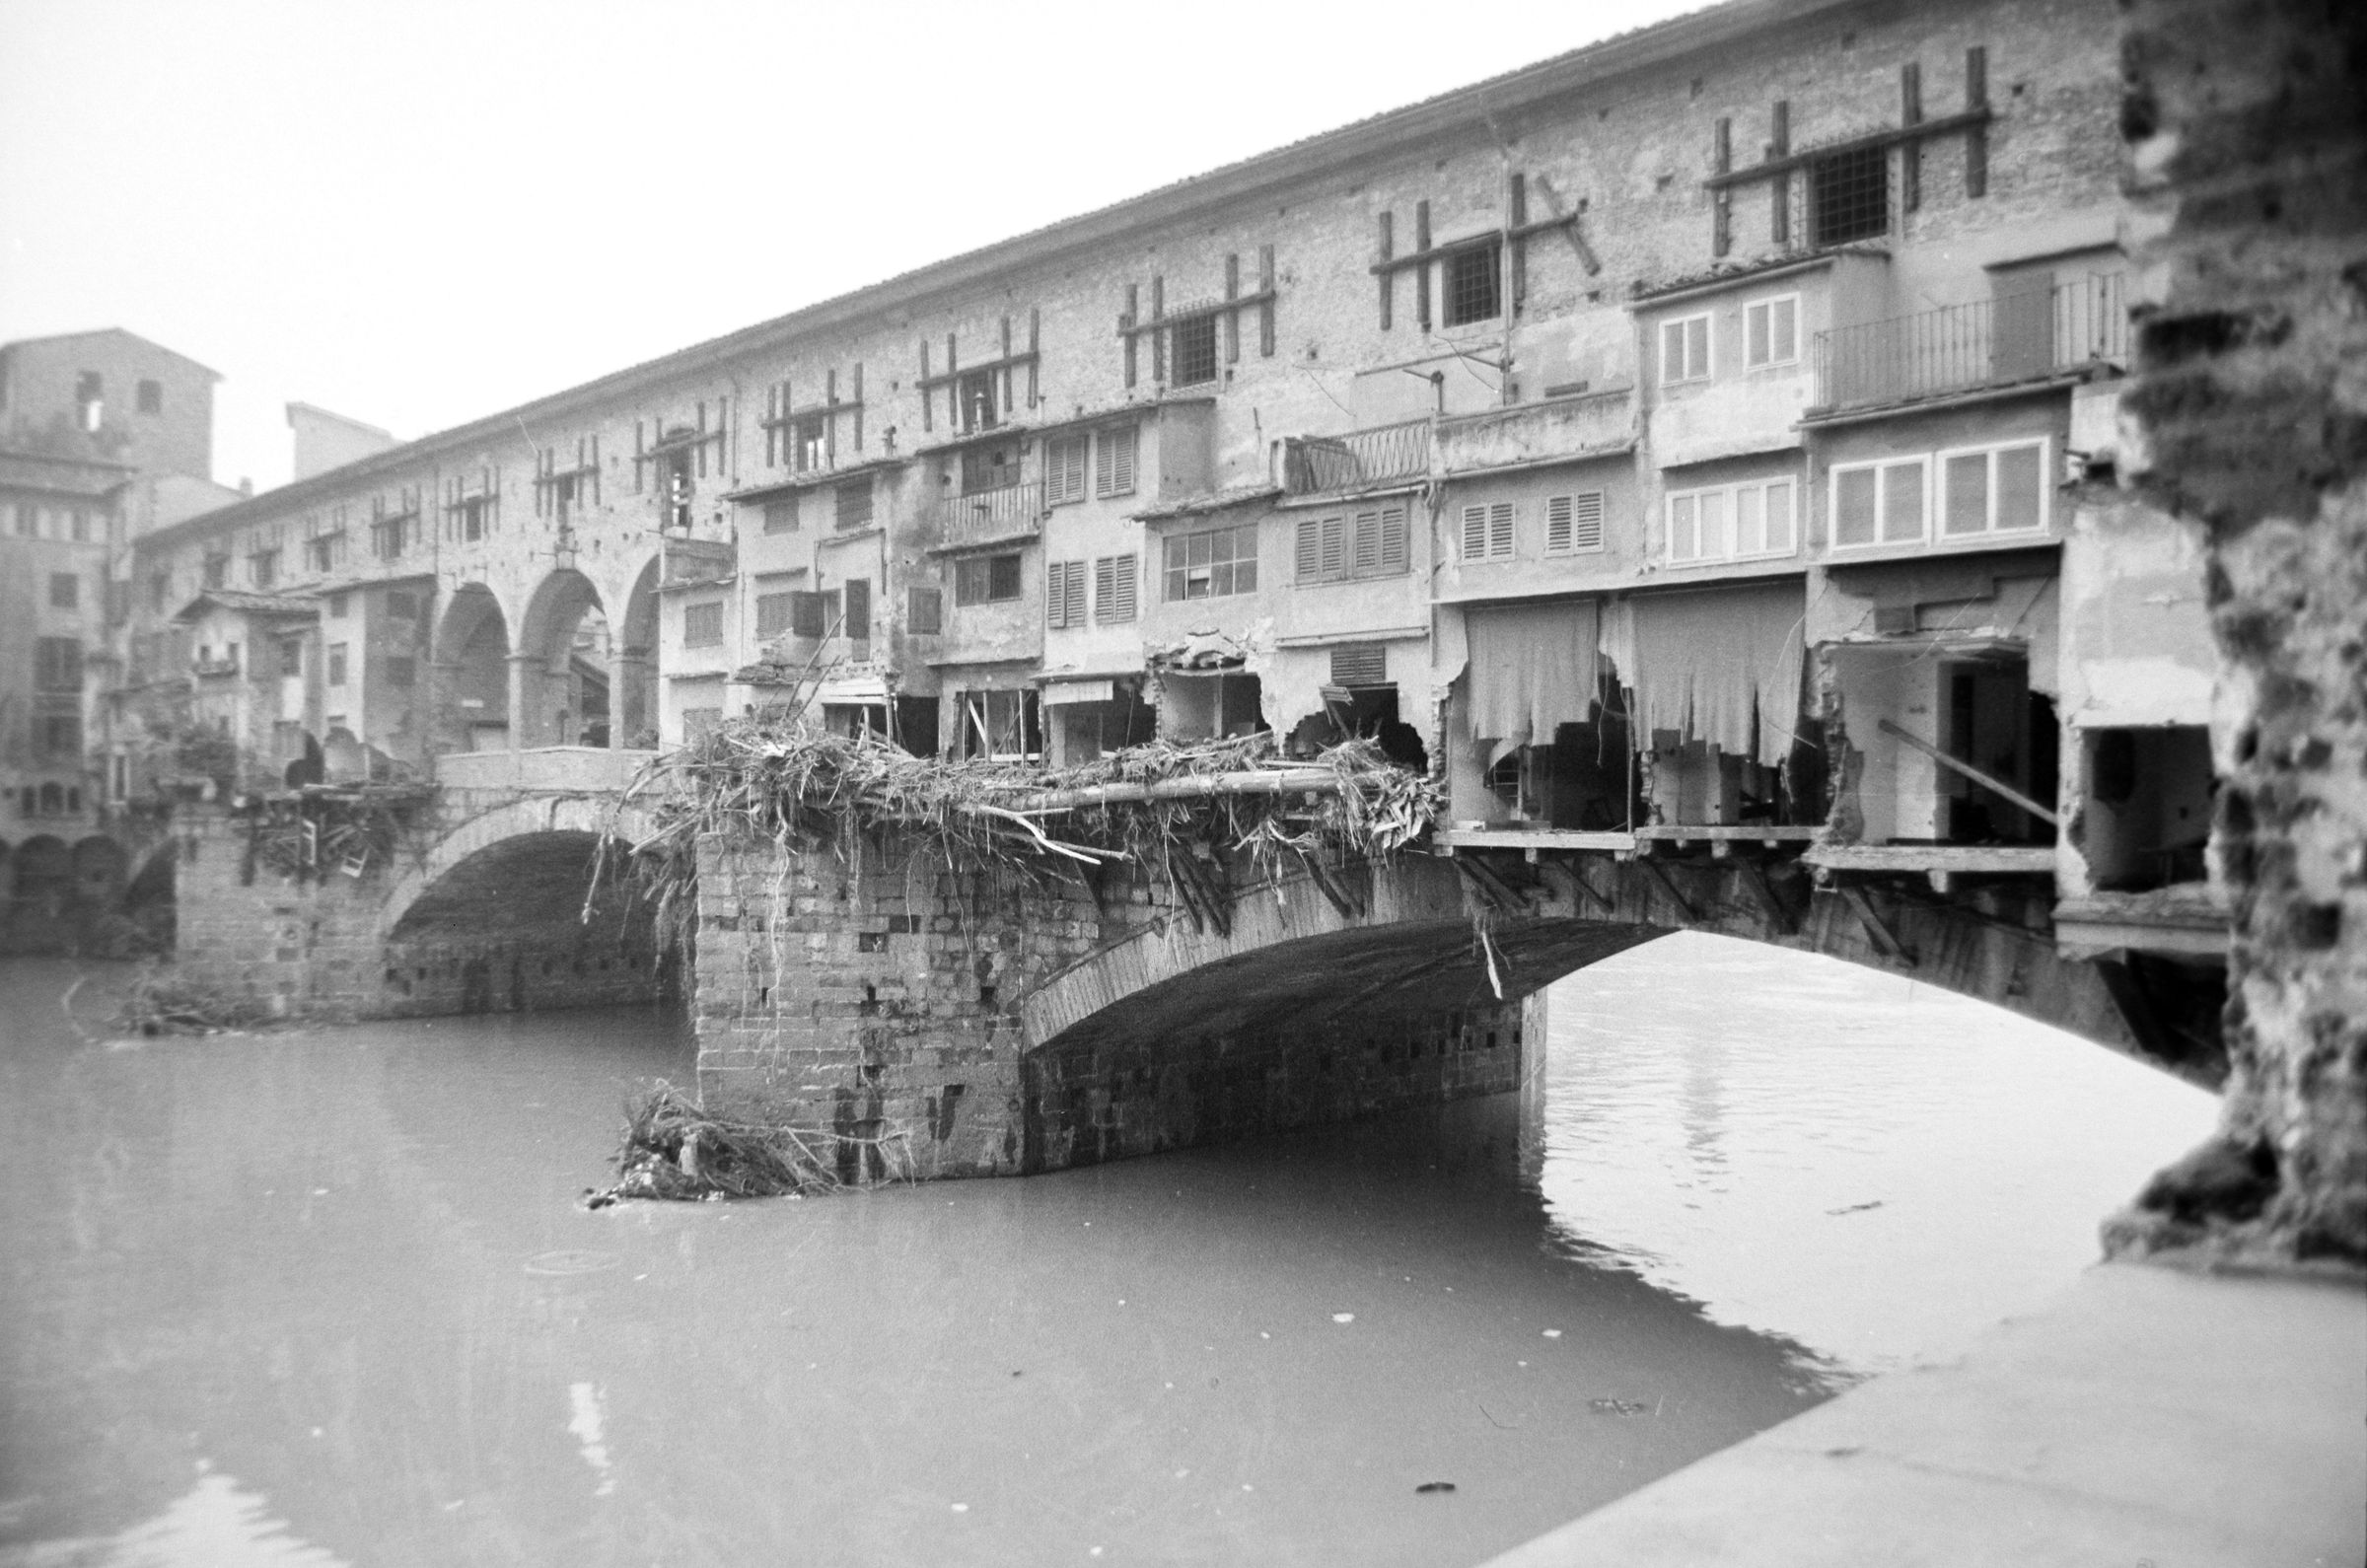 Fotografo non identificato, Firenze - Ponte Vecchio visto da Lungarno degli Archibusieri,1966, gelatina ai sali d'argento/pellicola, 35mm, R001819